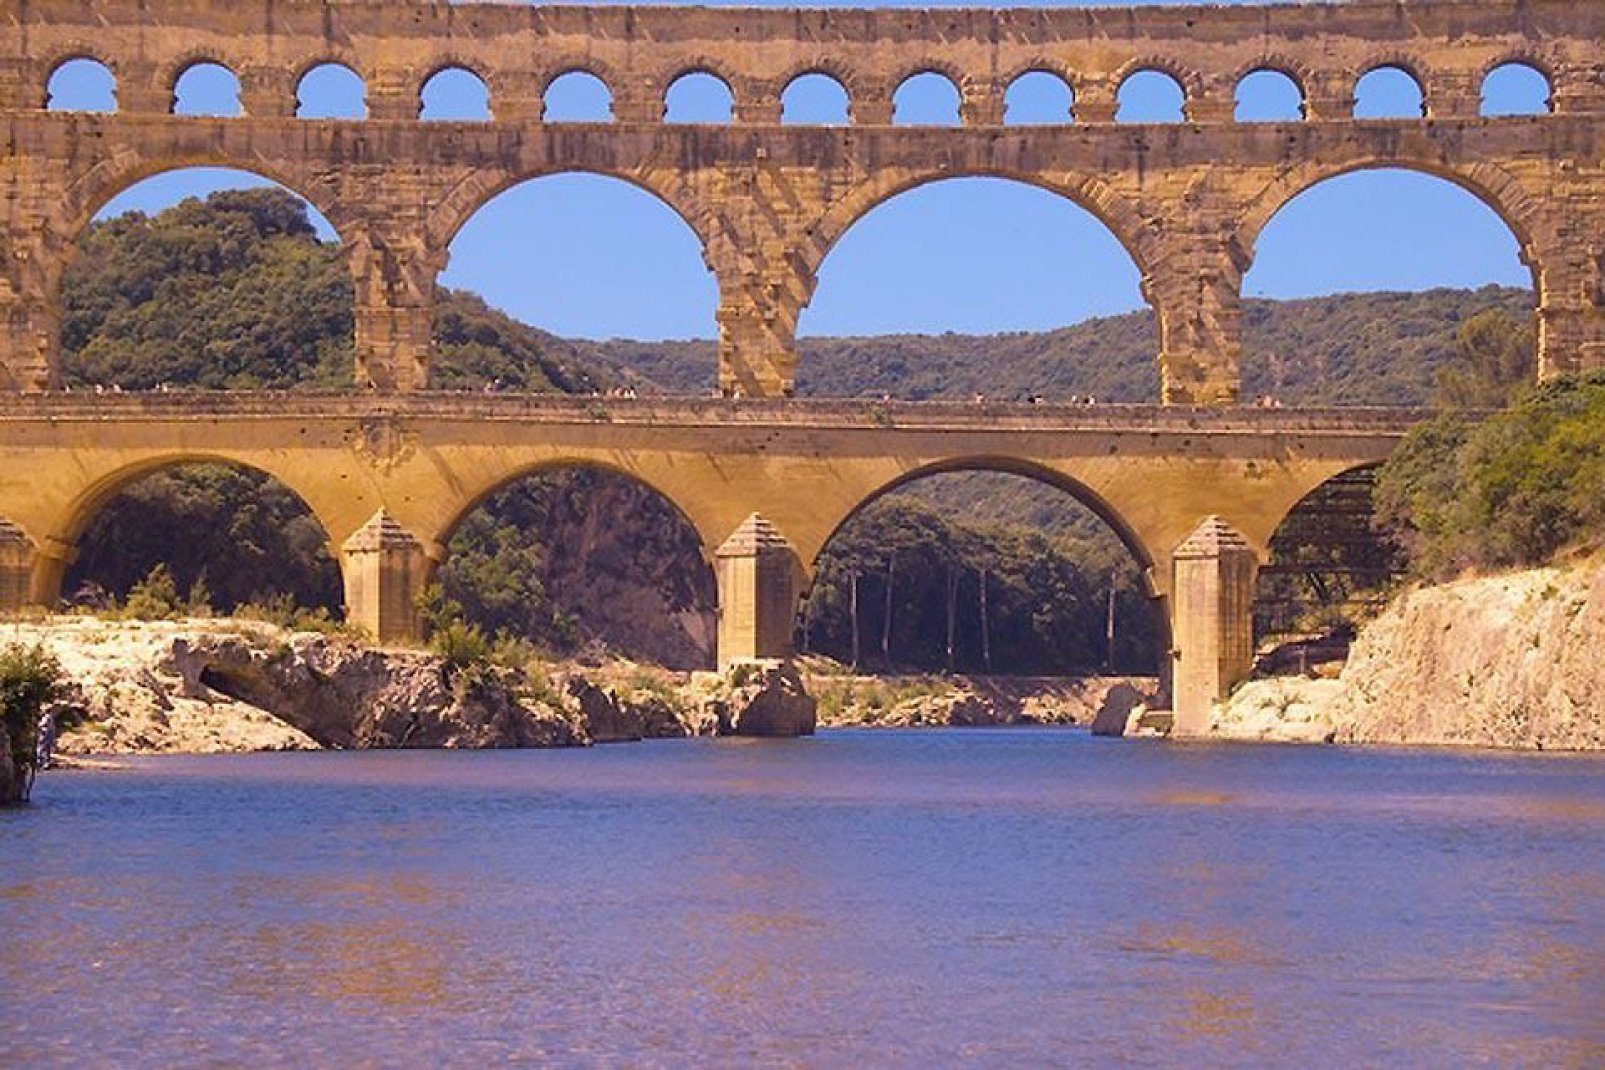 Dieser Aquadukt stammt aus der Römerzeit. Er umfasst drei verschiedene Höhenebenen, wovon die oberste auf 7,40 m Höhe liegt.